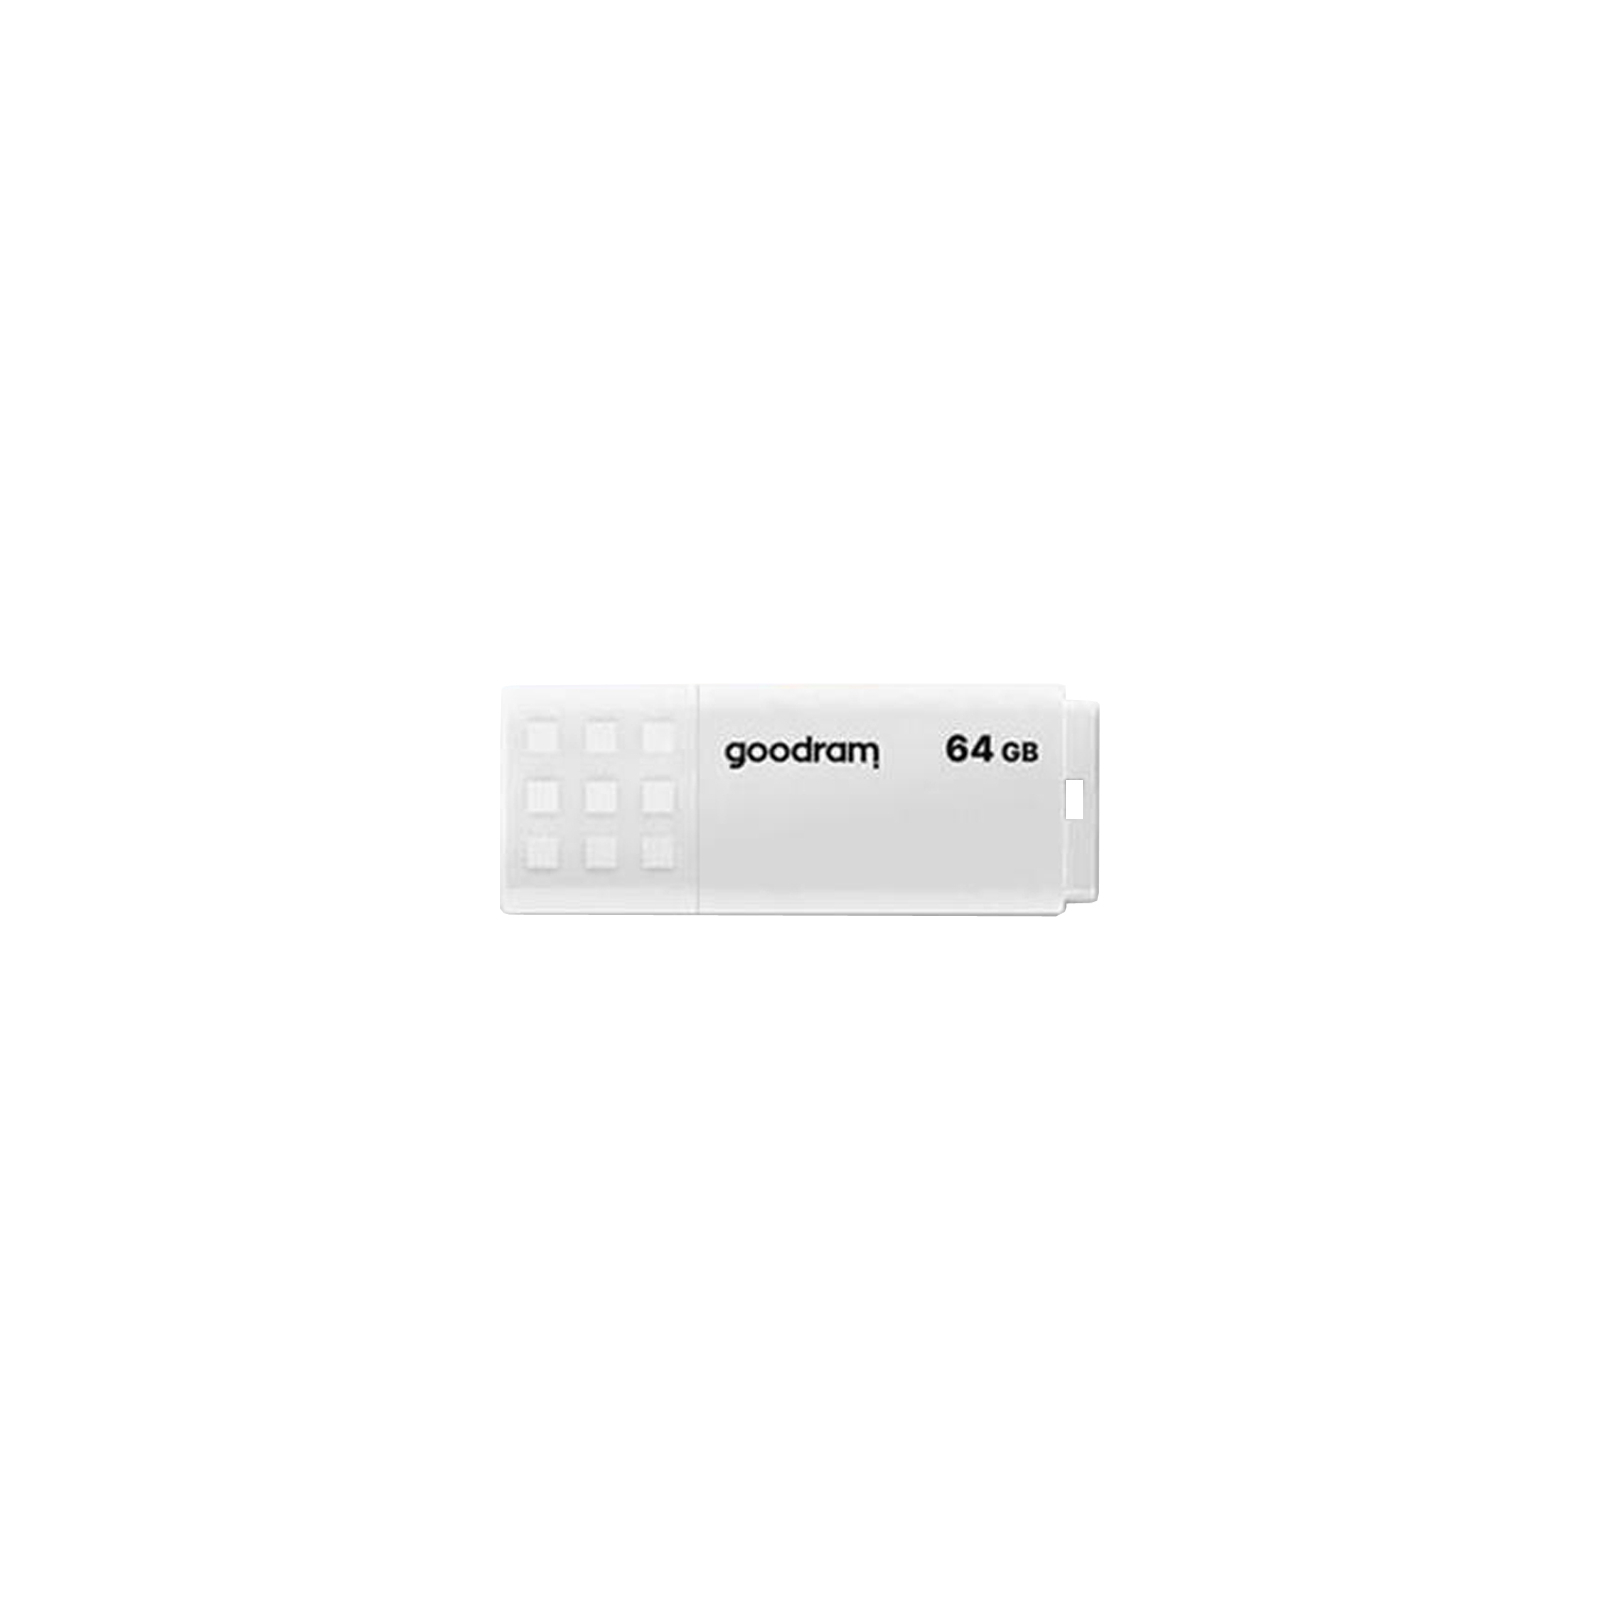 USB флеш накопитель Goodram 128GB UME2 White USB 2.0 (UME2-1280W0R11)